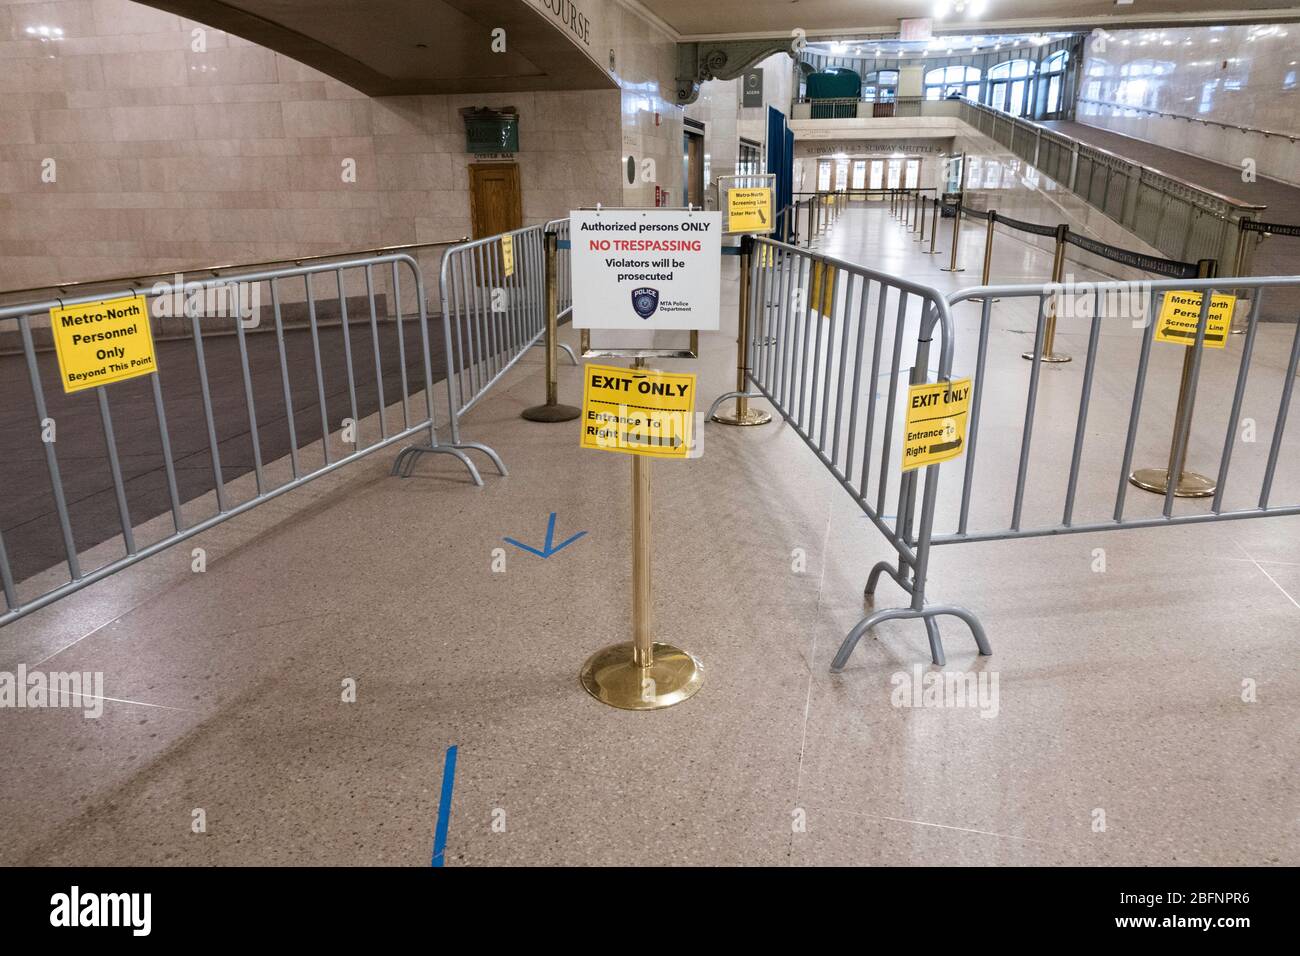 Grand Central est vide en raison de la pandémie COVID-19, avril 2020, New York City, États-Unis Banque D'Images